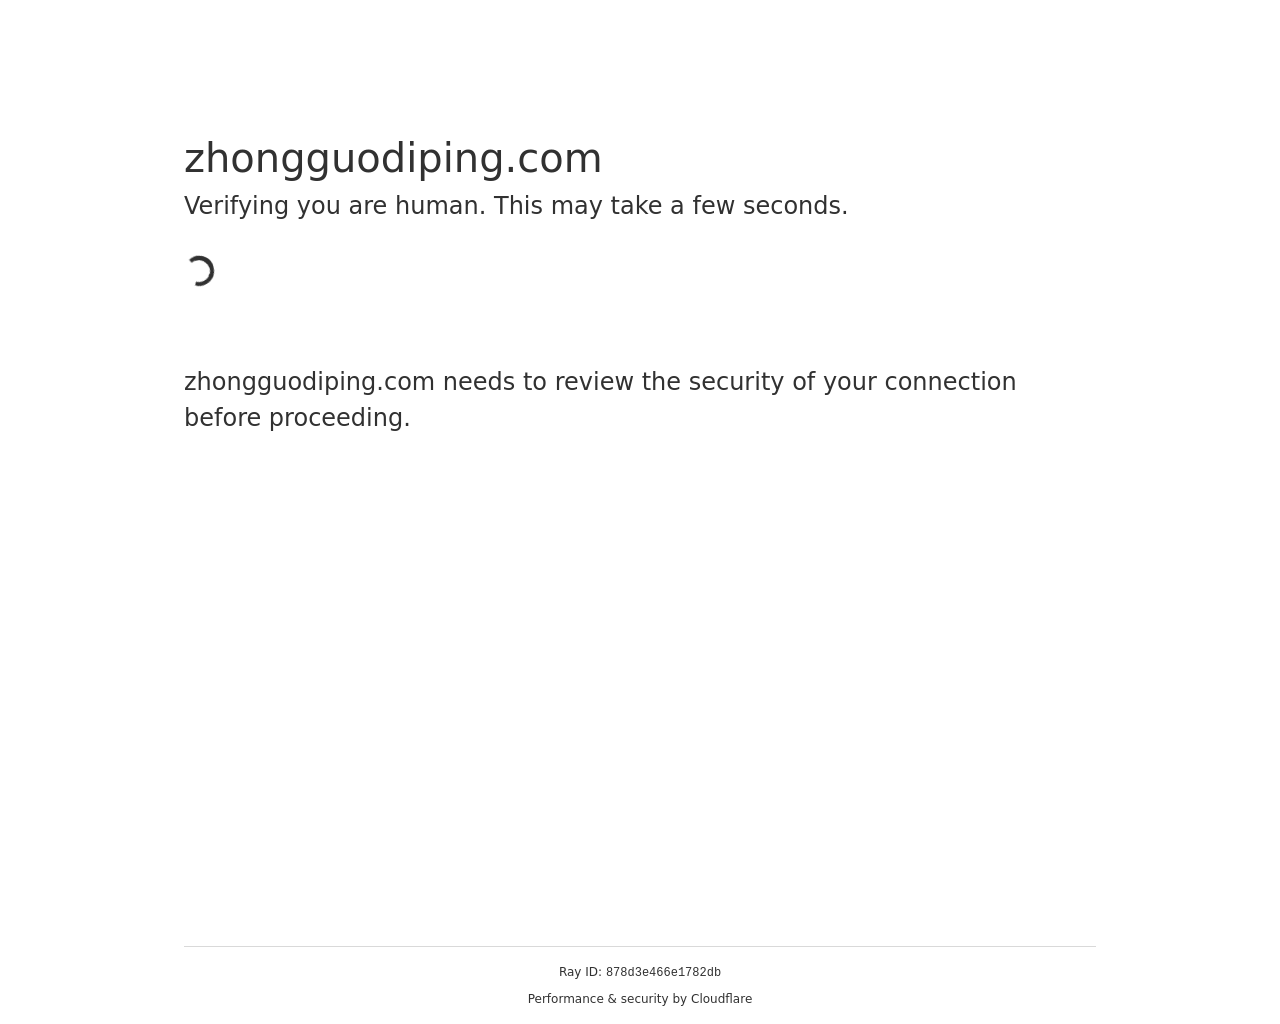 zhongguodiping.com